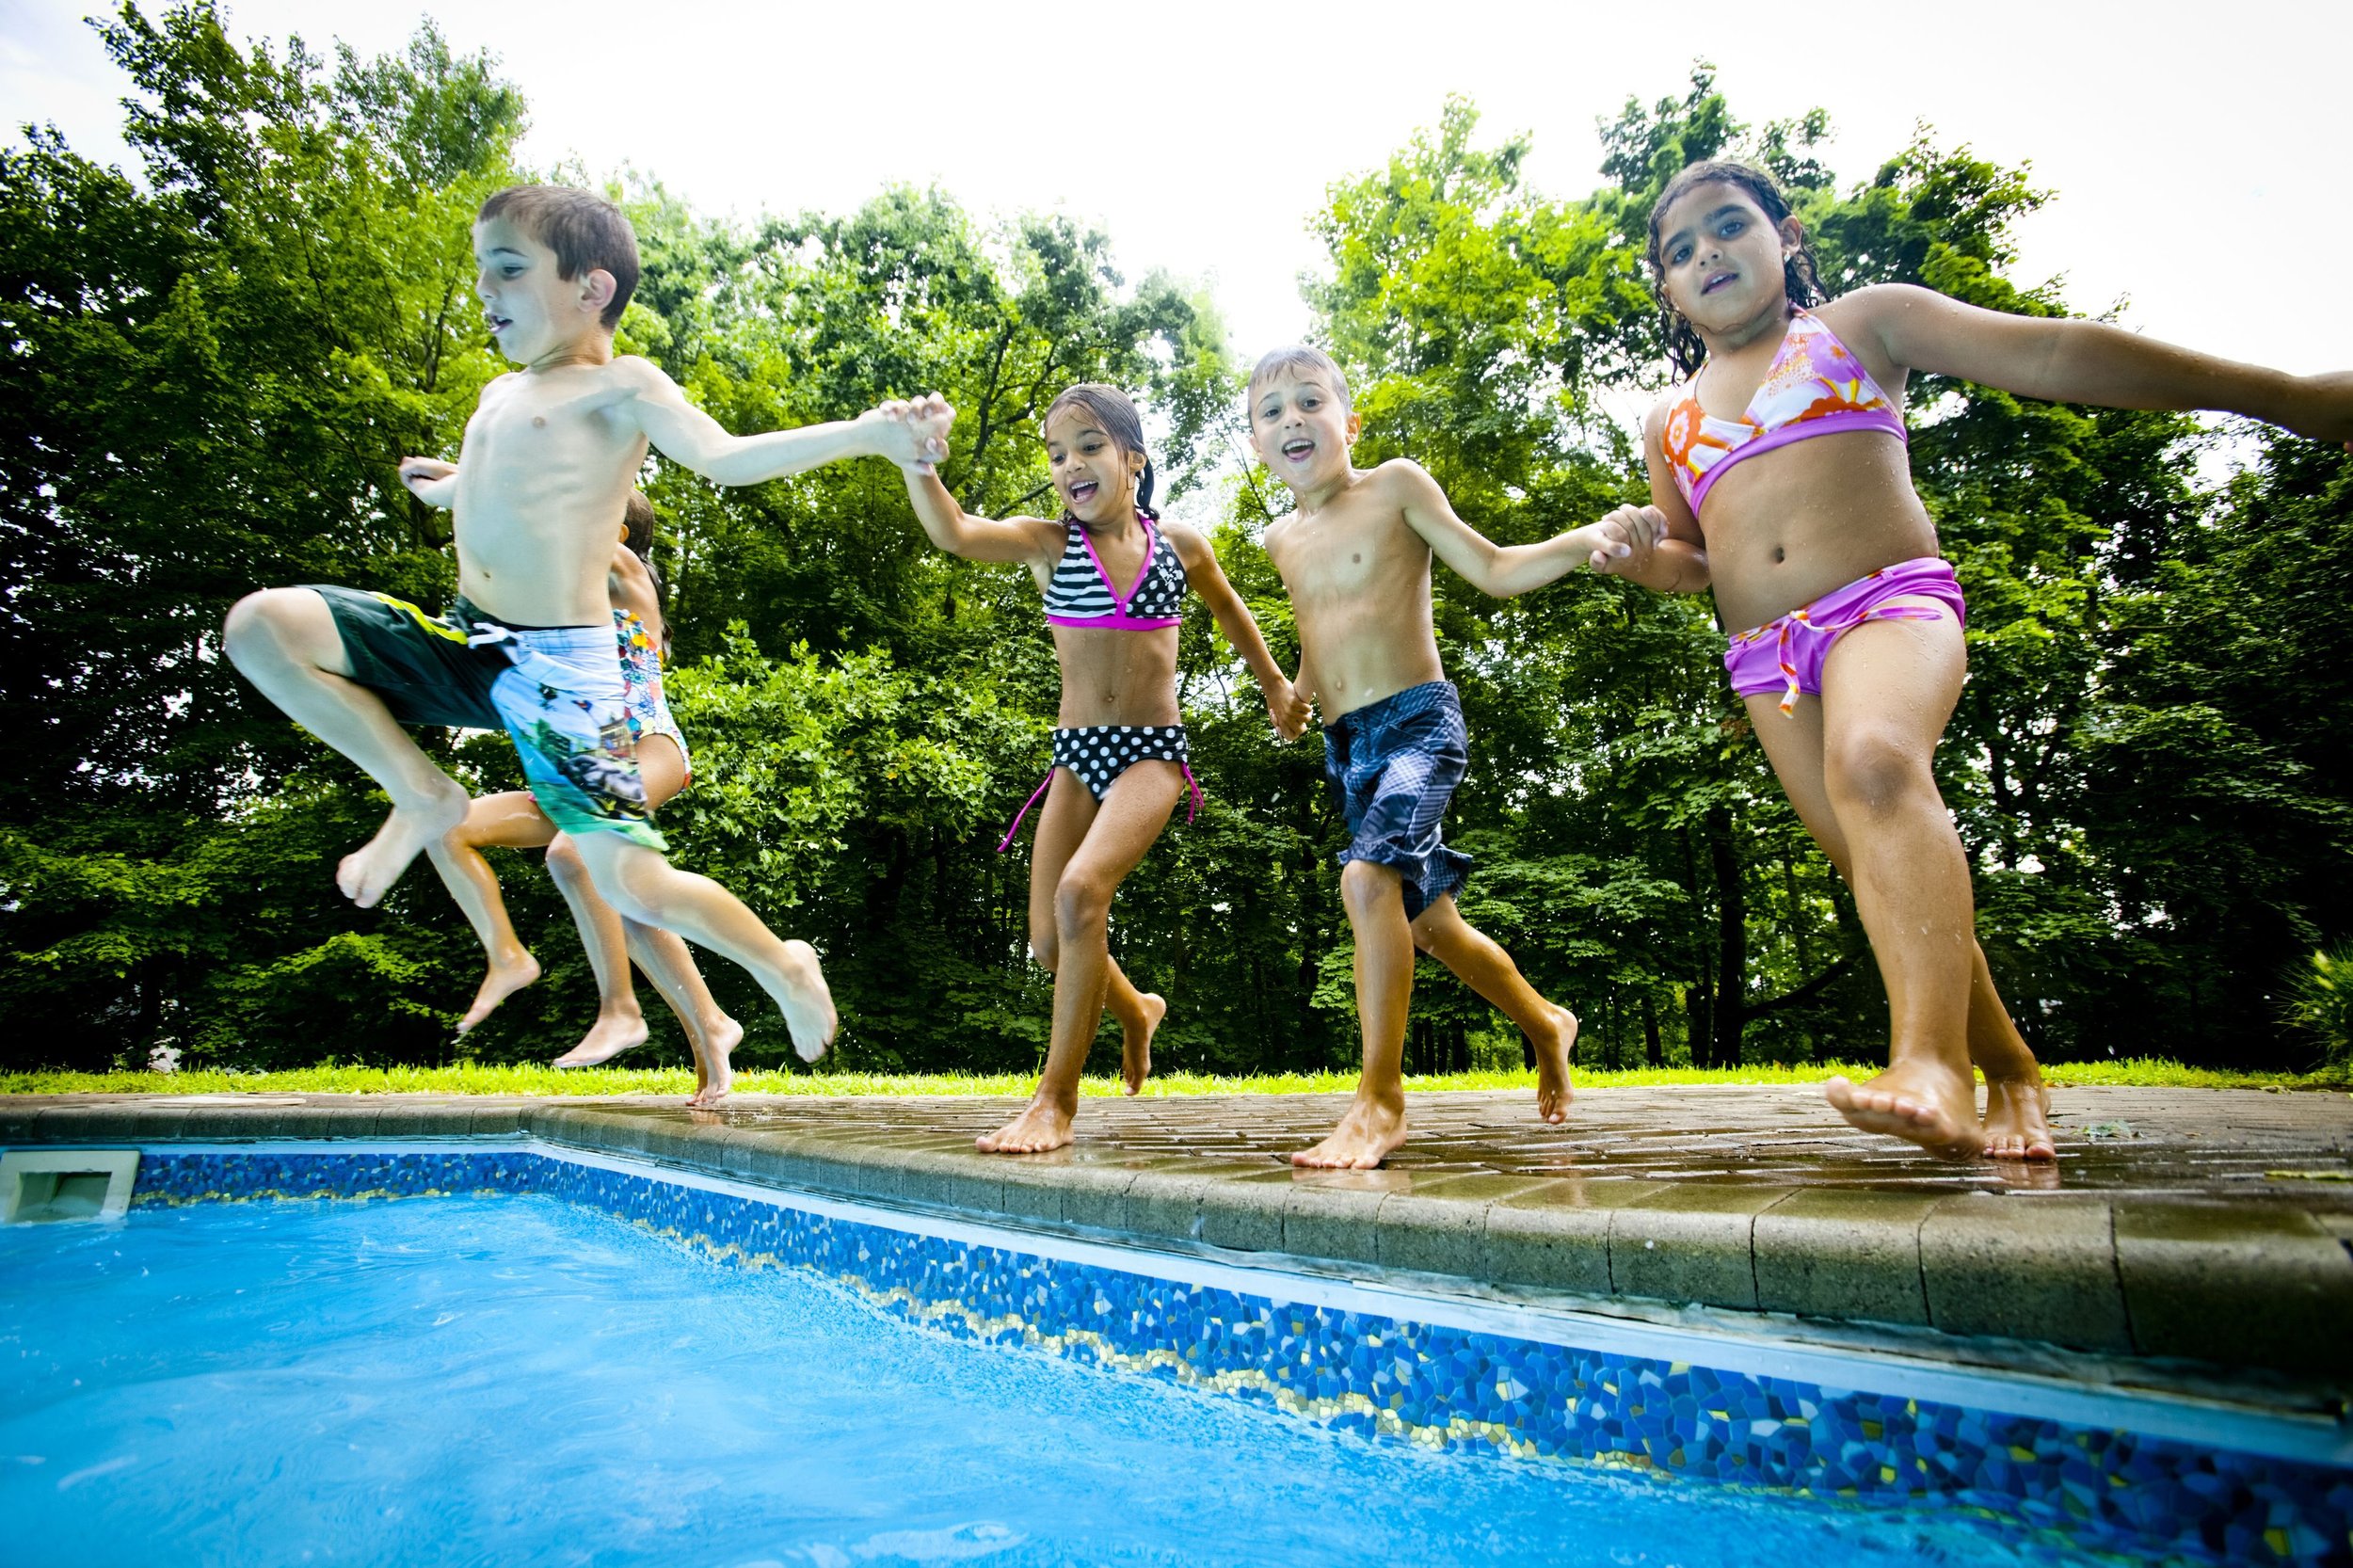 5-kids-jumping-in-pool-154872046-57d692695f9b589b0afd47fc.jpg